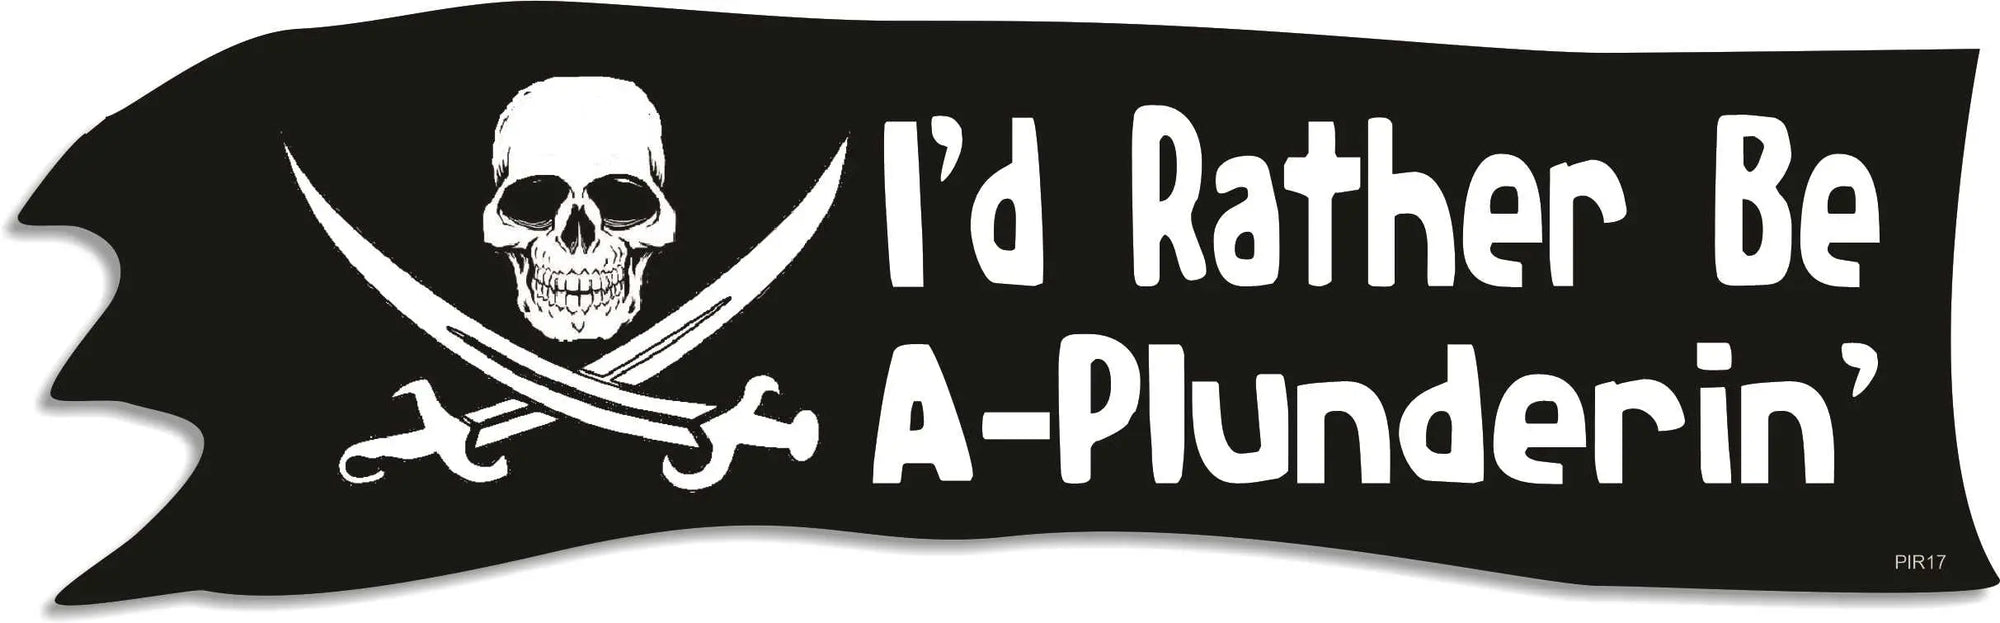 I'd Rather Be A-Plunderin' - Pirate Bumper Sticker Humper Bumper